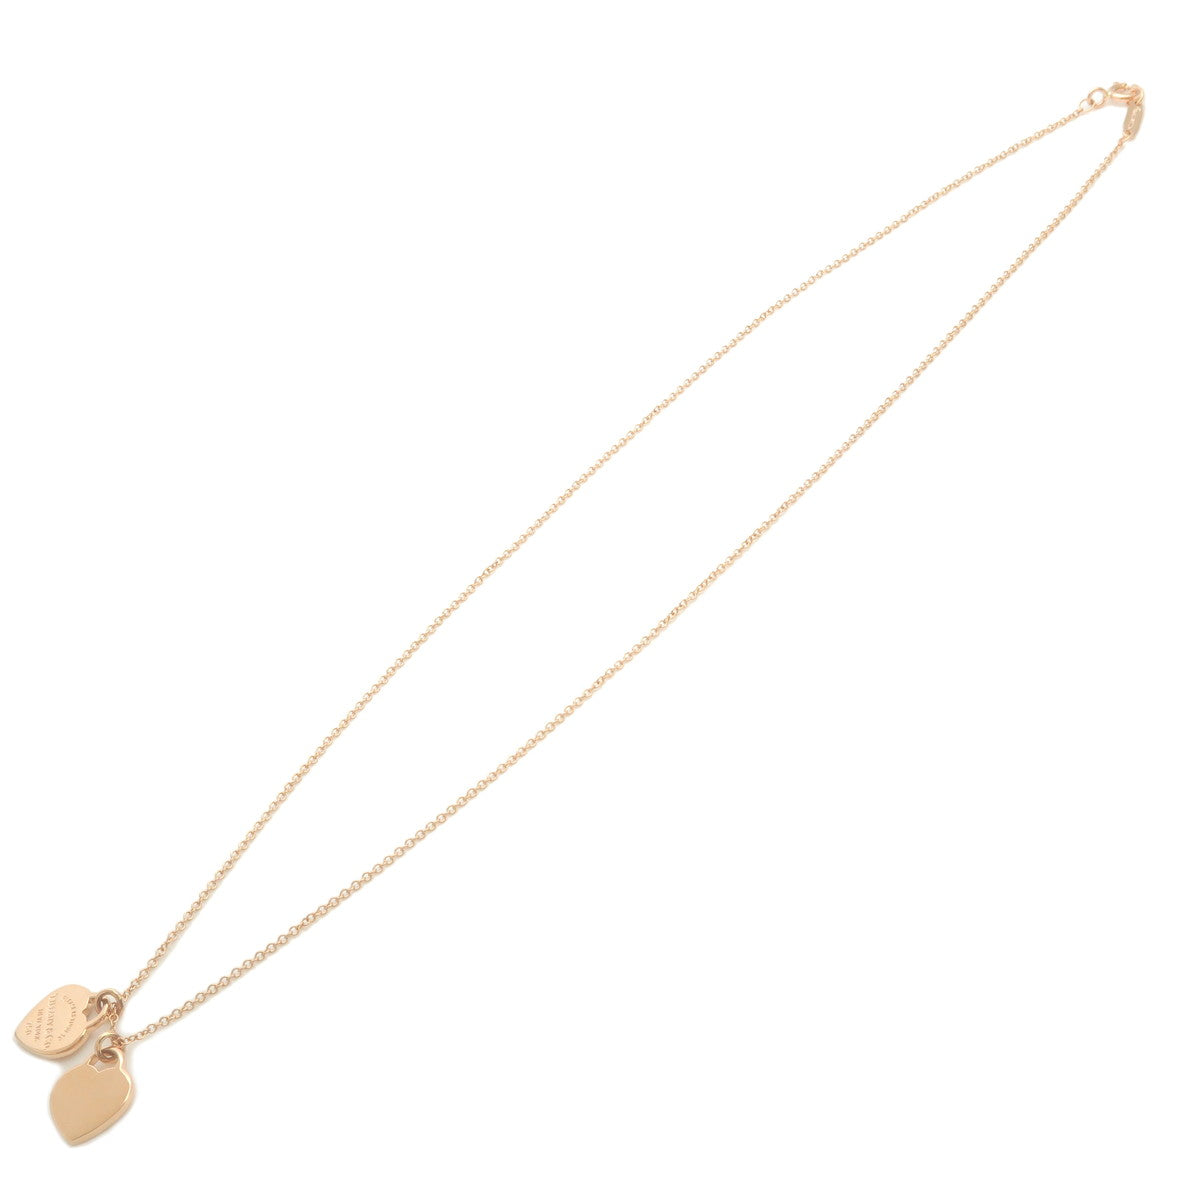 Tiffany&Co. Return to Tiffany Mini Double Heart Tag Necklace K18PG